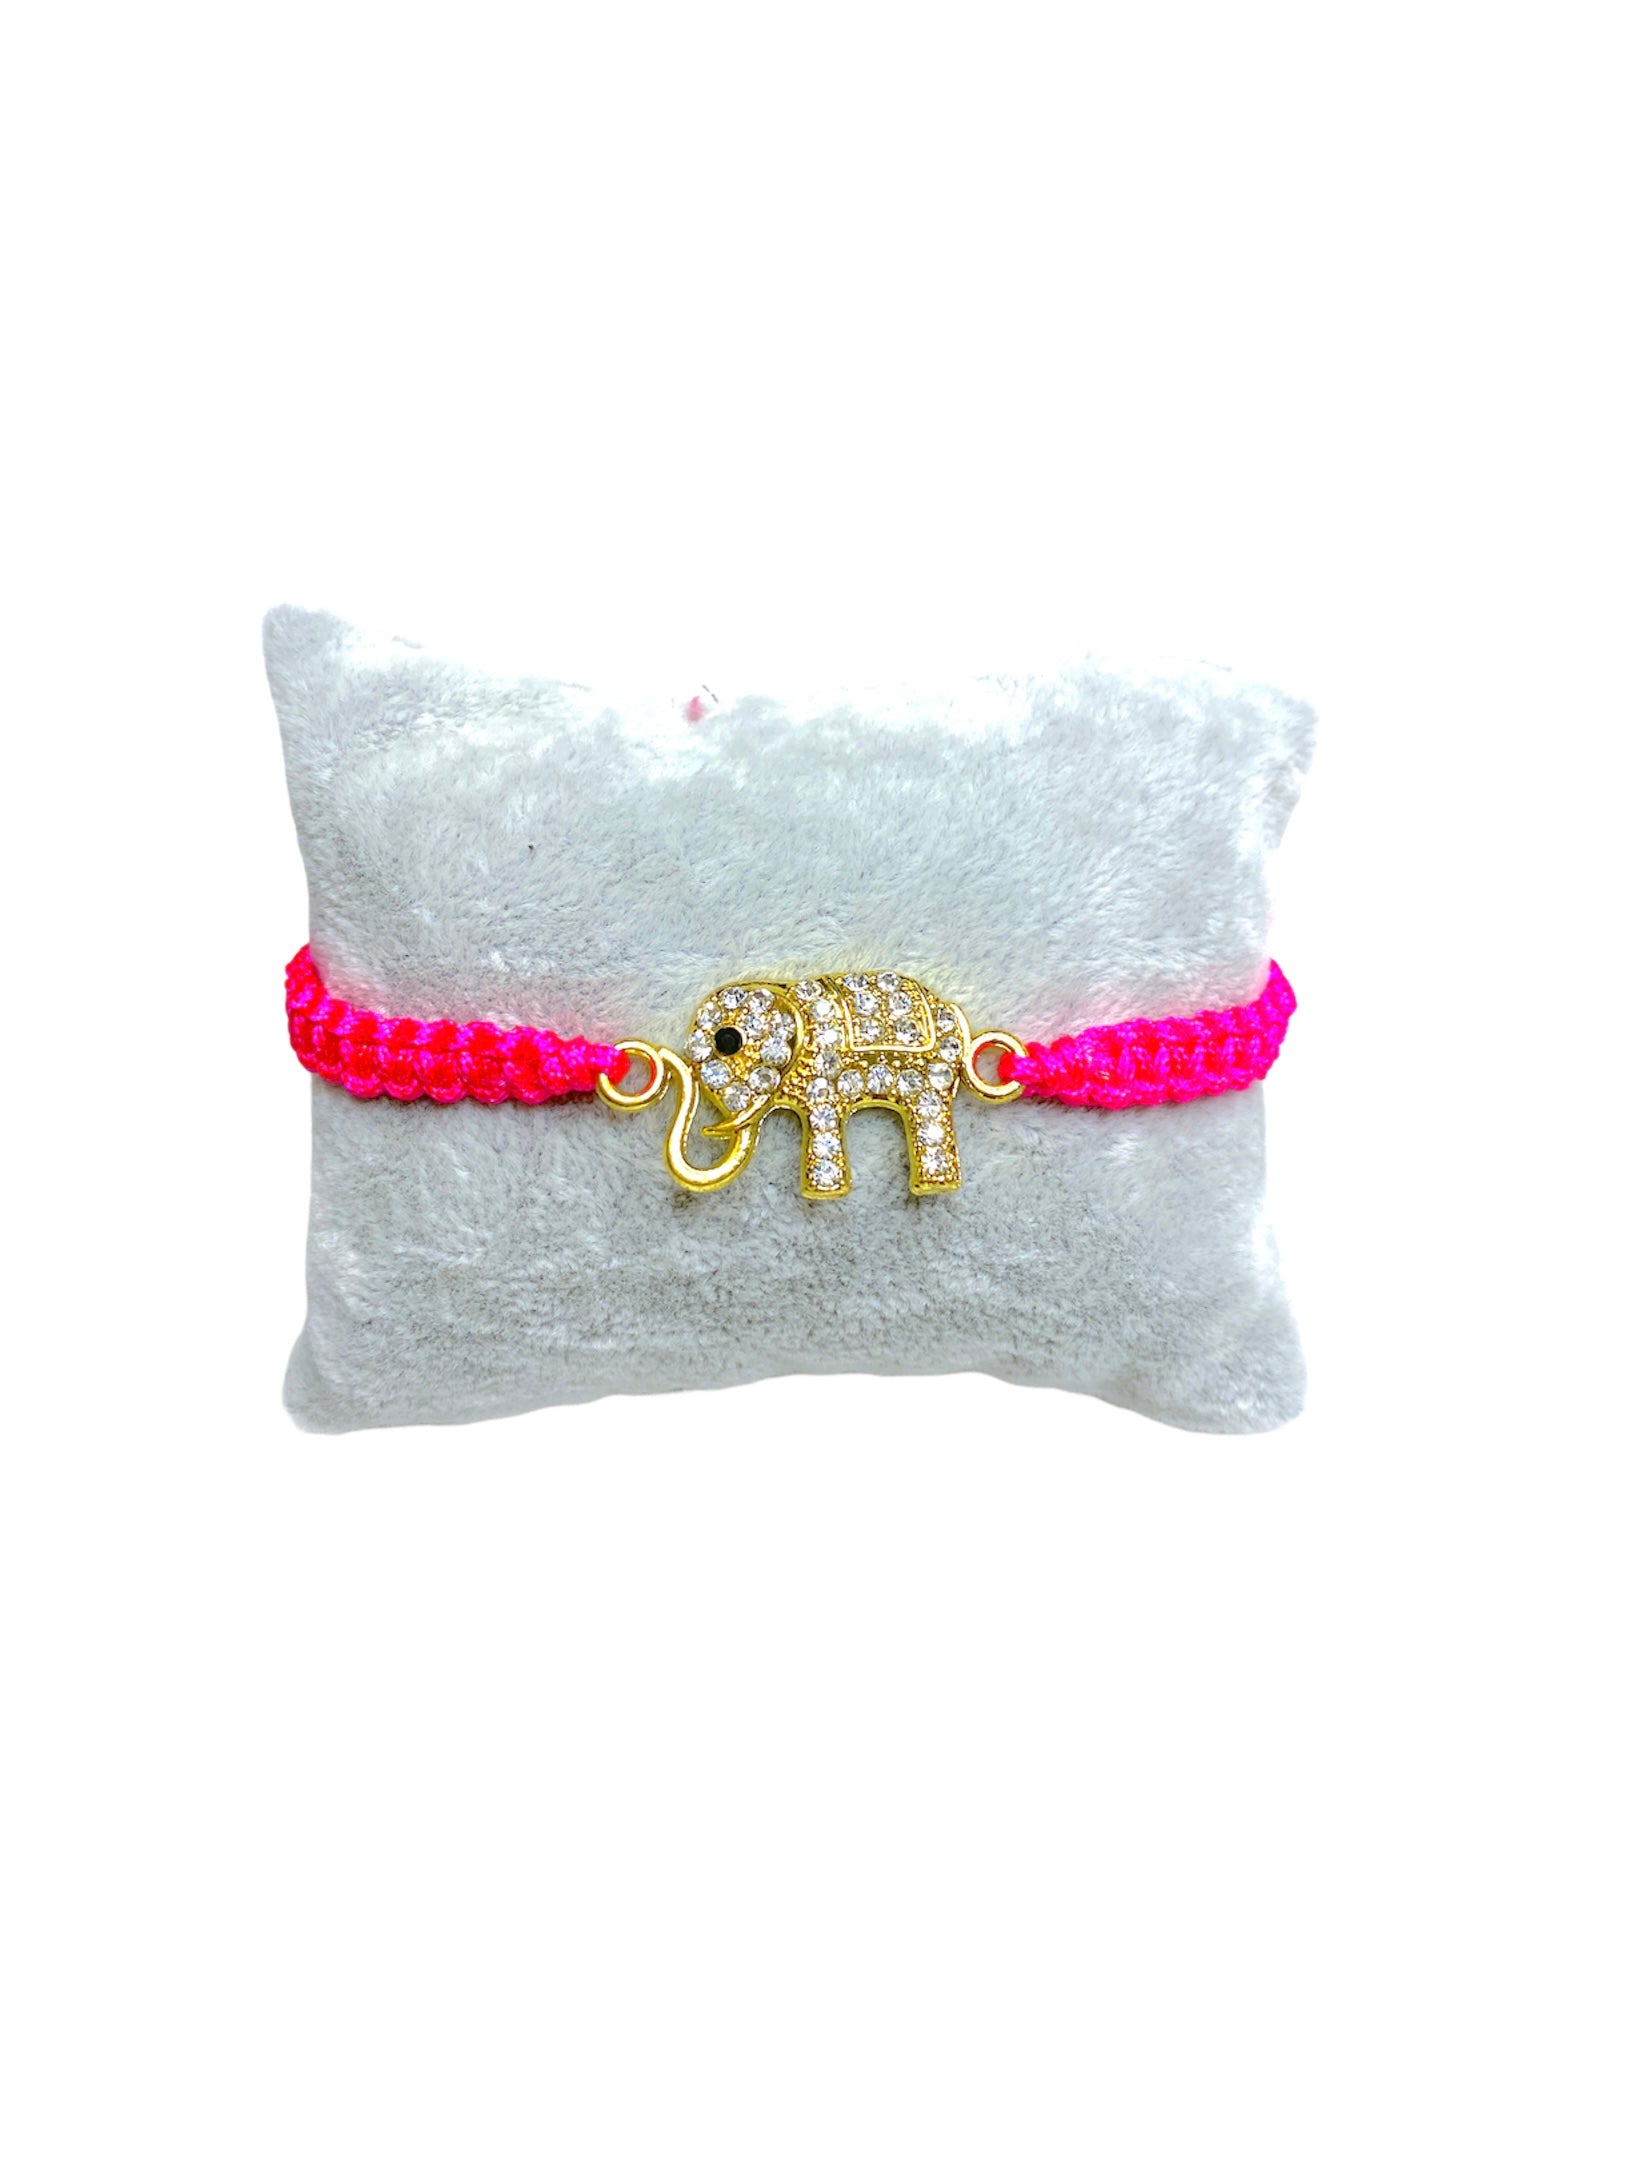 Bracelet ficelle rose fluo avec motif éléphant       (x12)